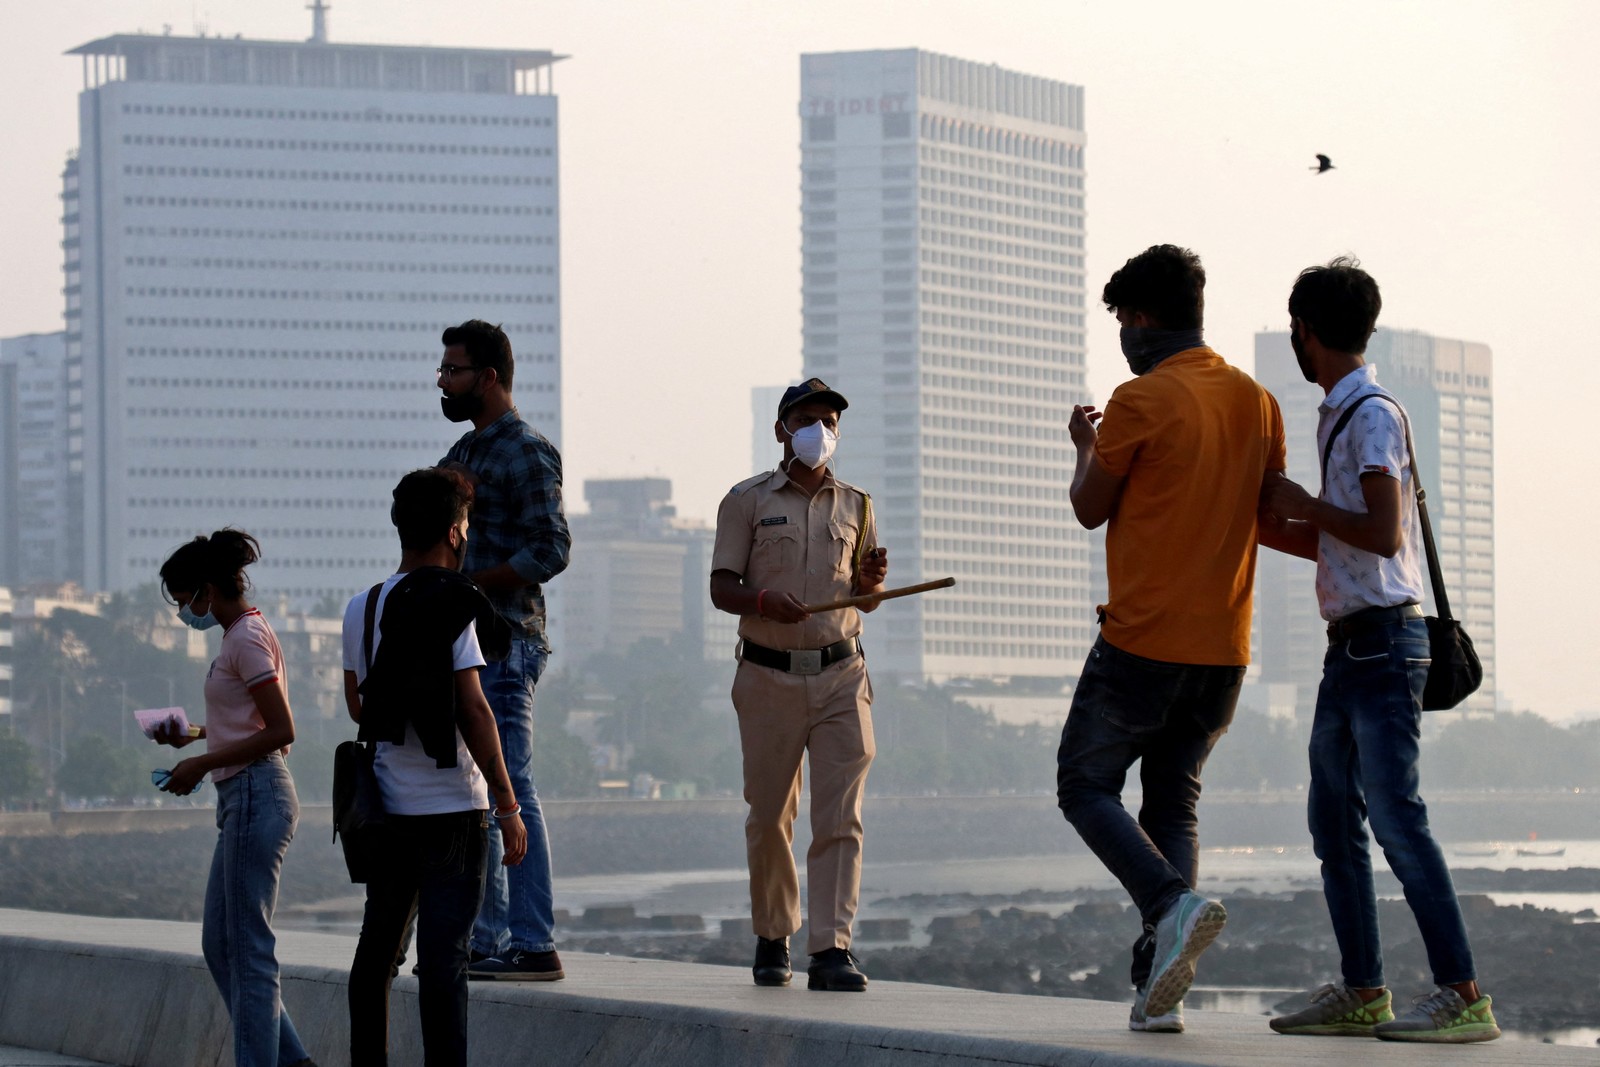 Policial pede às pessoas que saiam do passeio na unidade da Marinha, durante restrições para limitar as reuniões públicas em meio à disseminação do coronavírus em MumbaiREUTERS